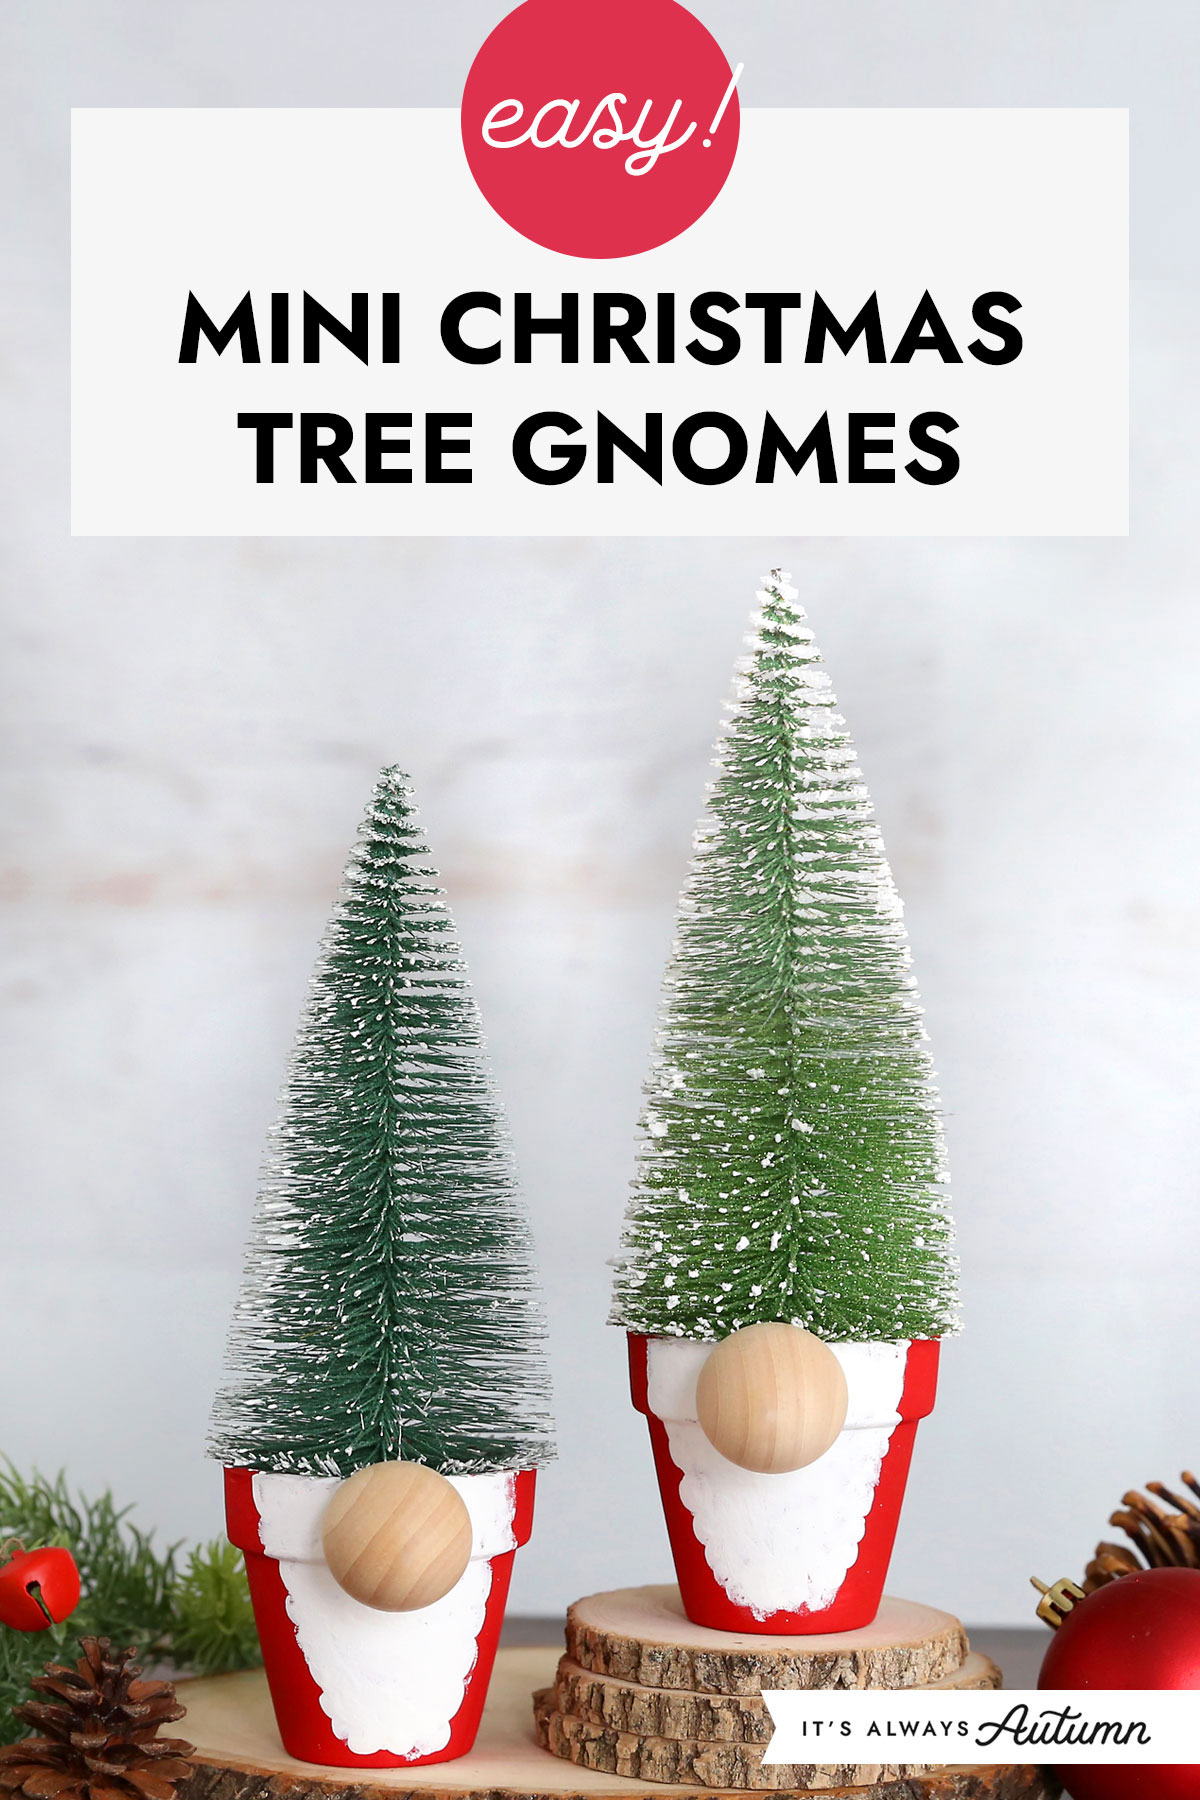 Easy! Mini Christmas tree gnomes.